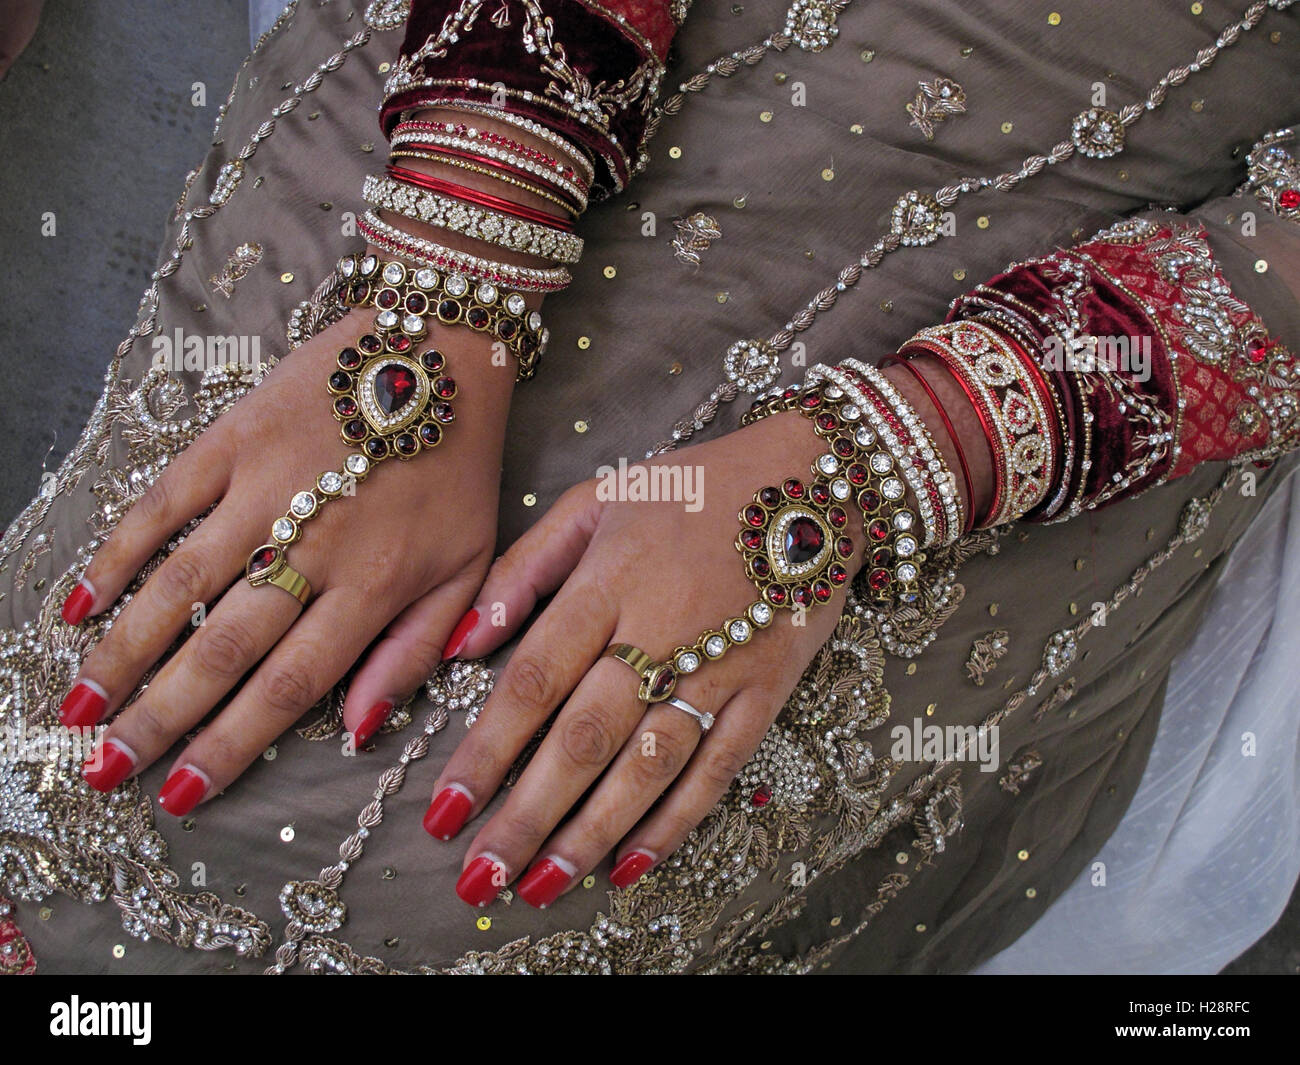 Asiatique indien, pakistanais, bangladeshi mariage mains et bijoux, belles décorations de henné et d'or Banque D'Images